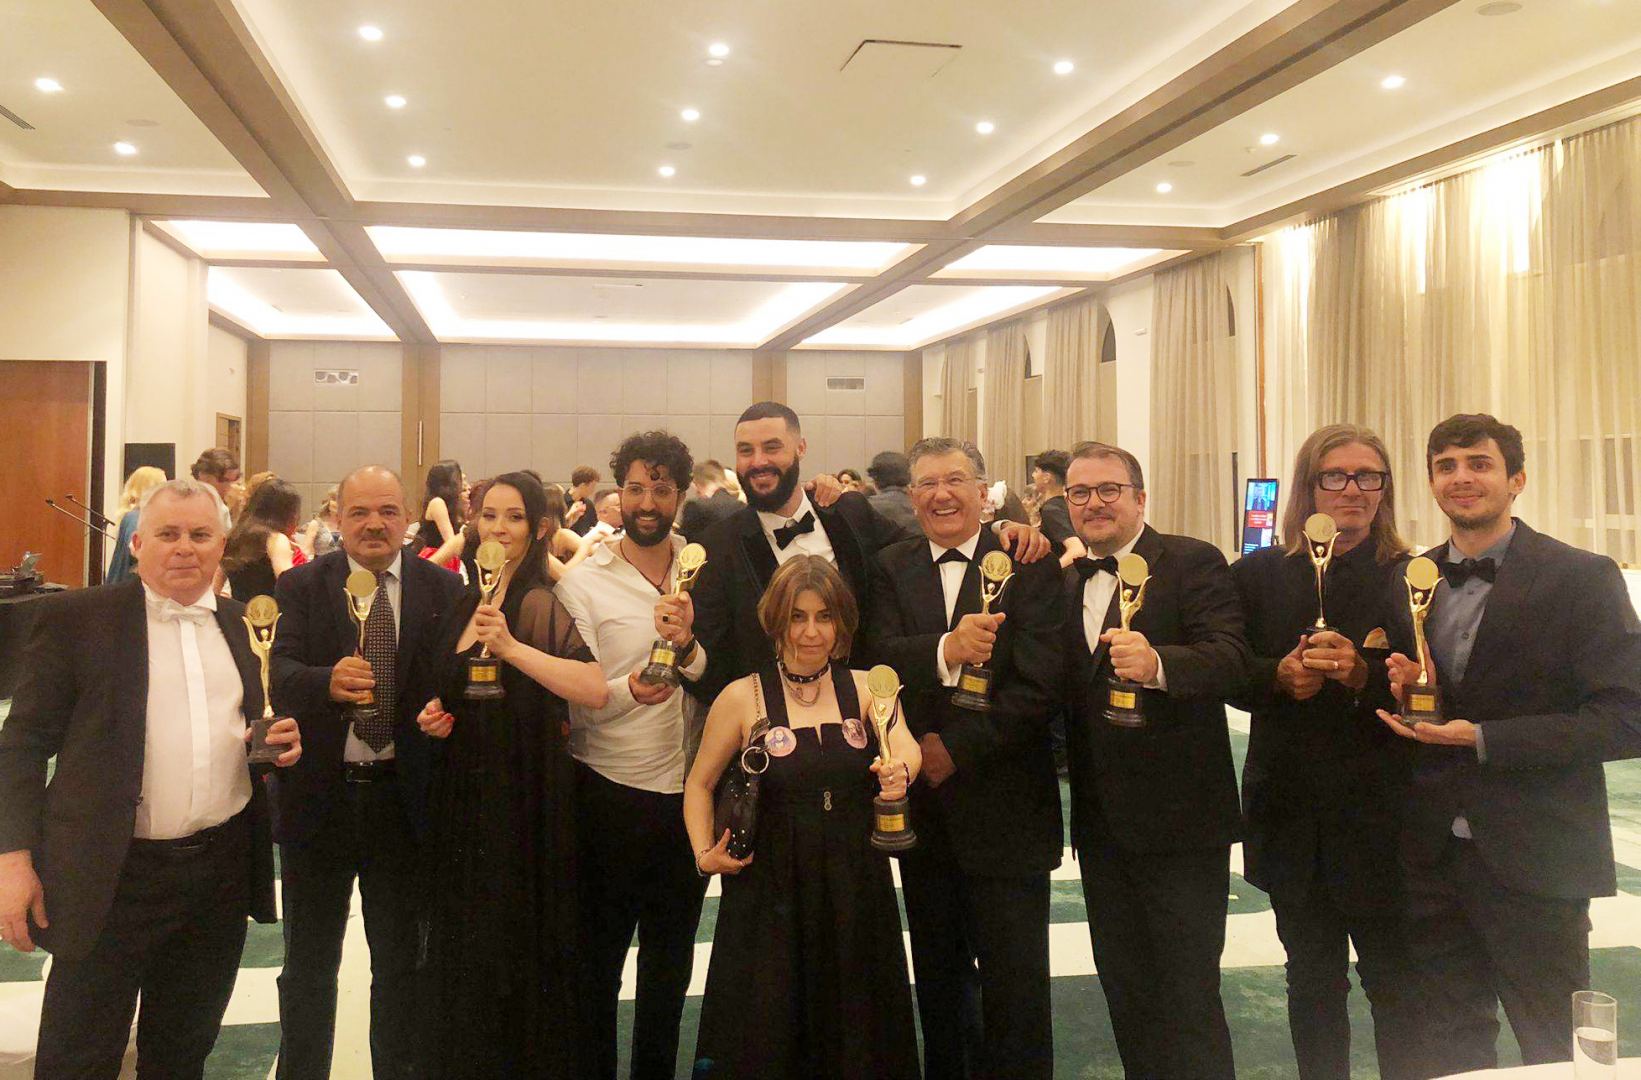 Азербайджанский режиссер награжден премией Golden FEMI Film Festival в Болгарии (ФОТО)